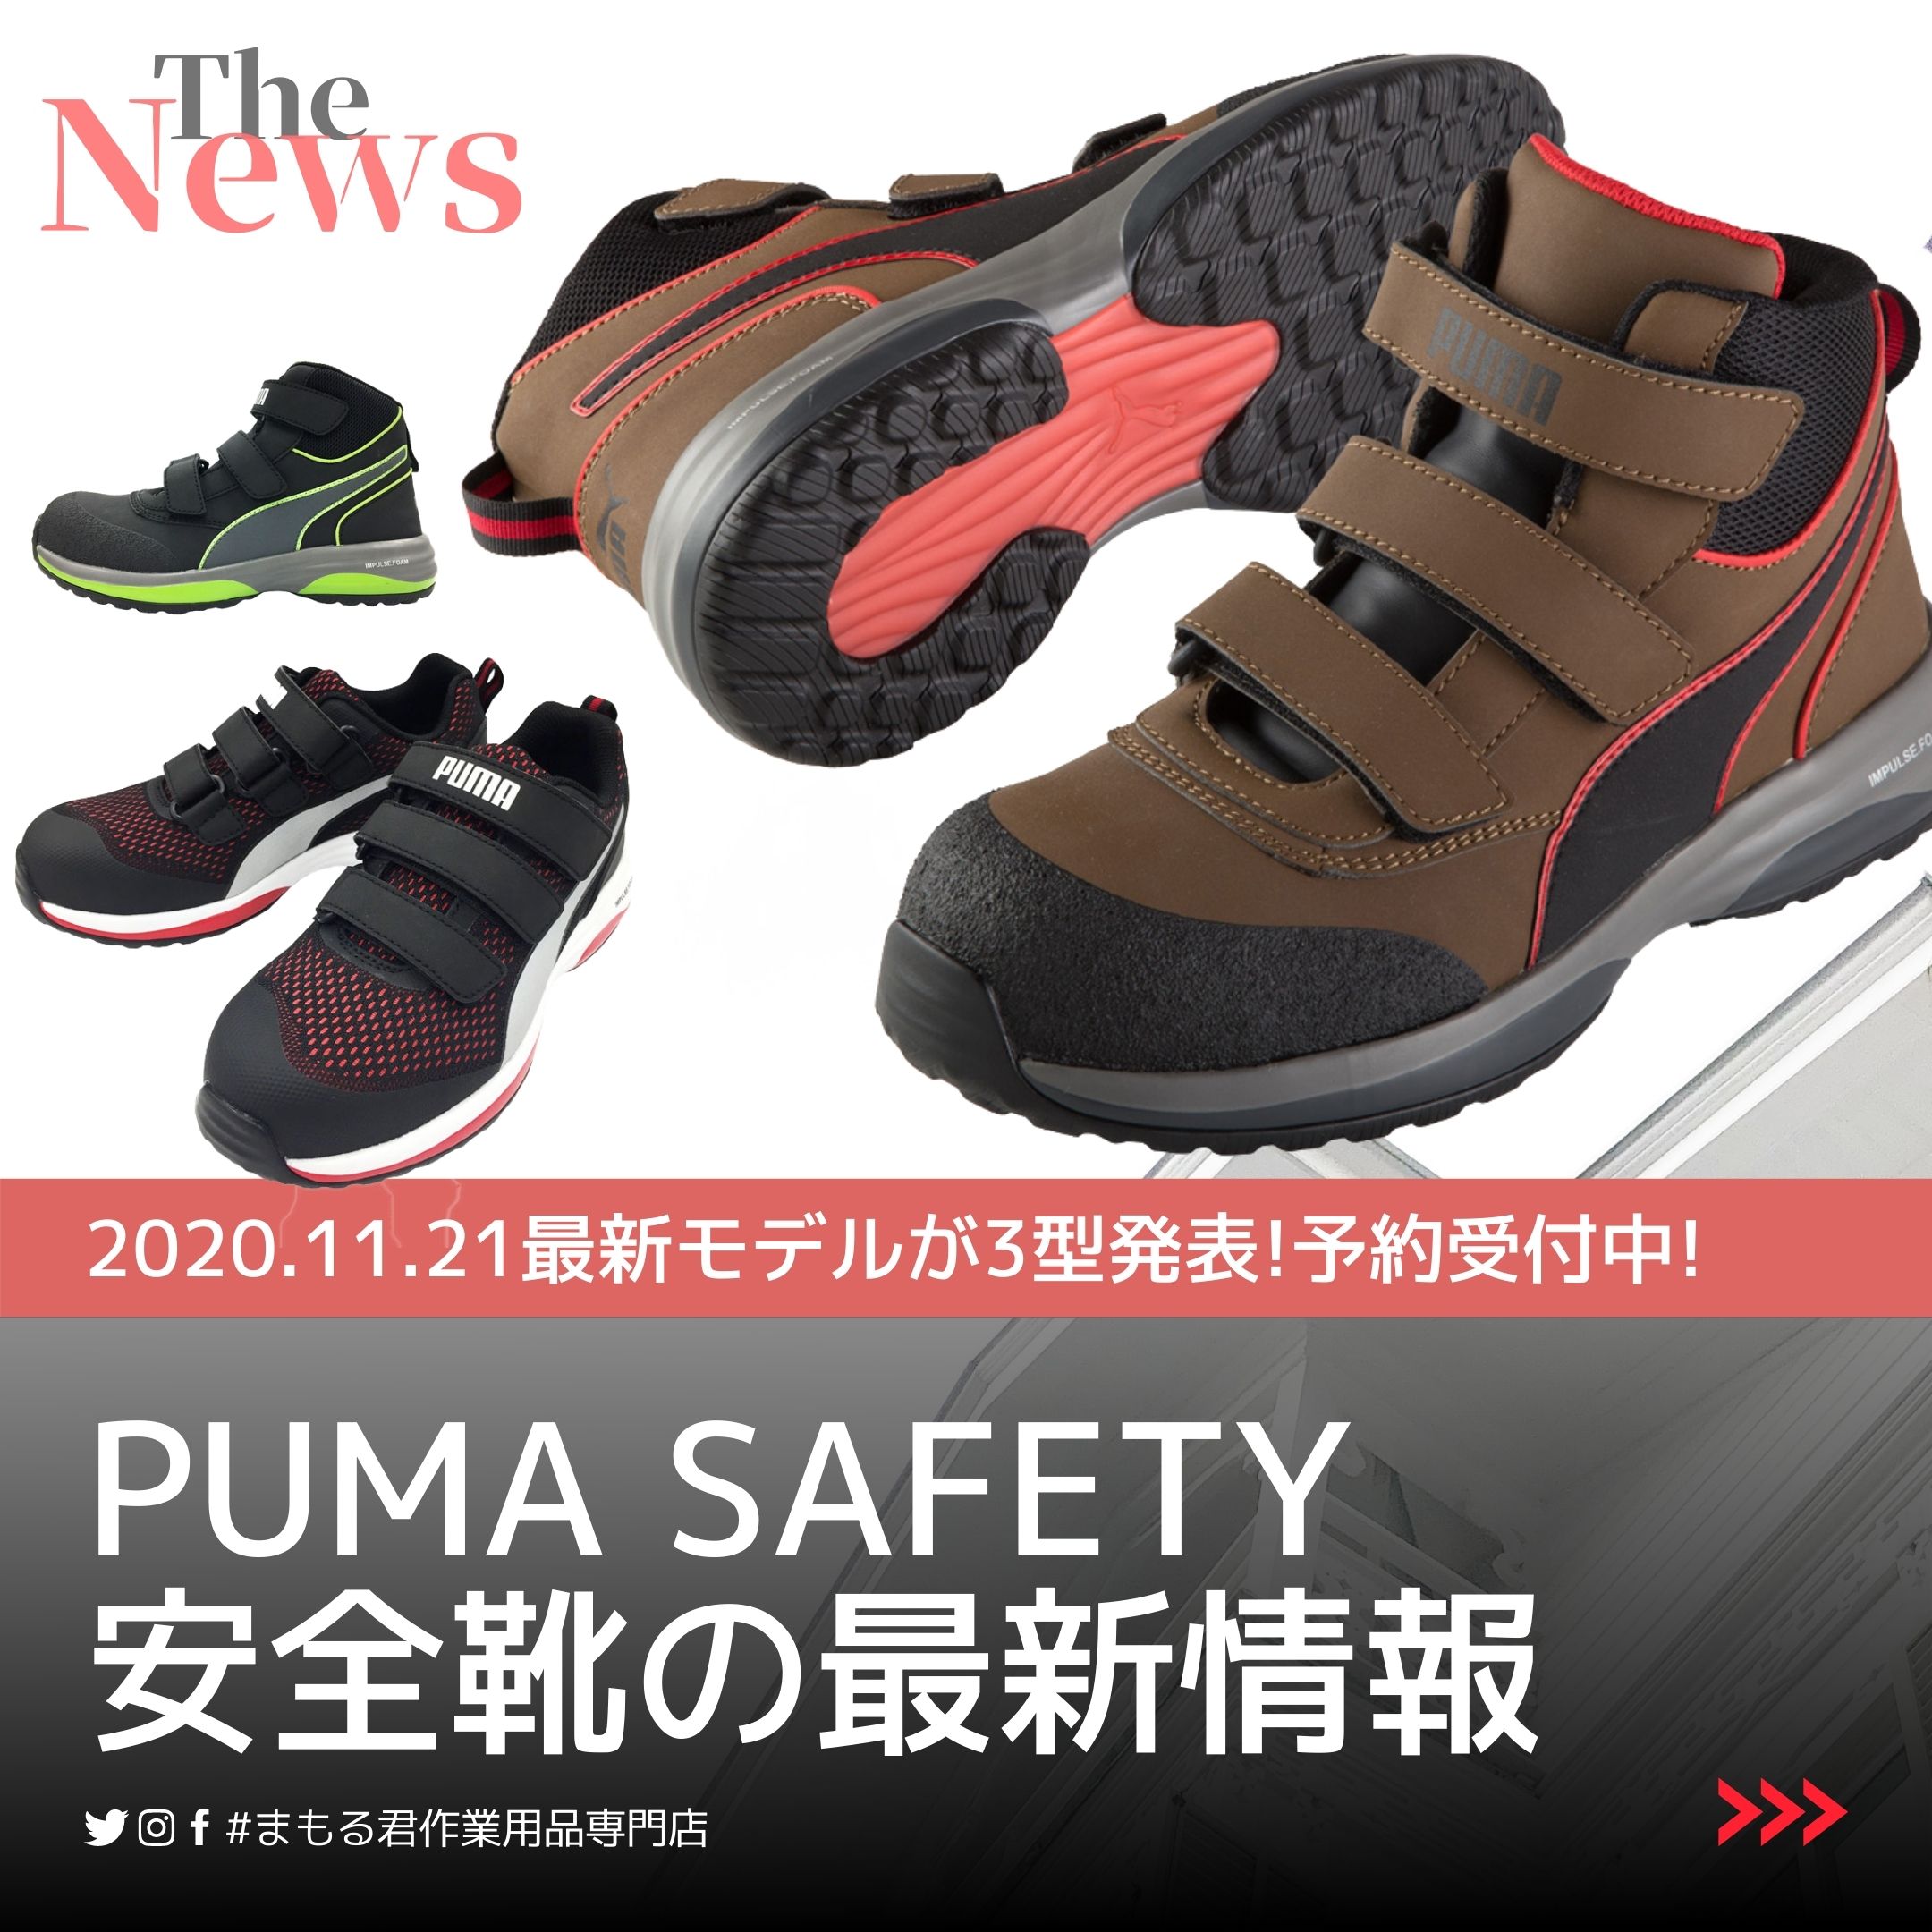 2022年版プーマ 安全靴の限定モデル情報や定番モデルのご紹介!!